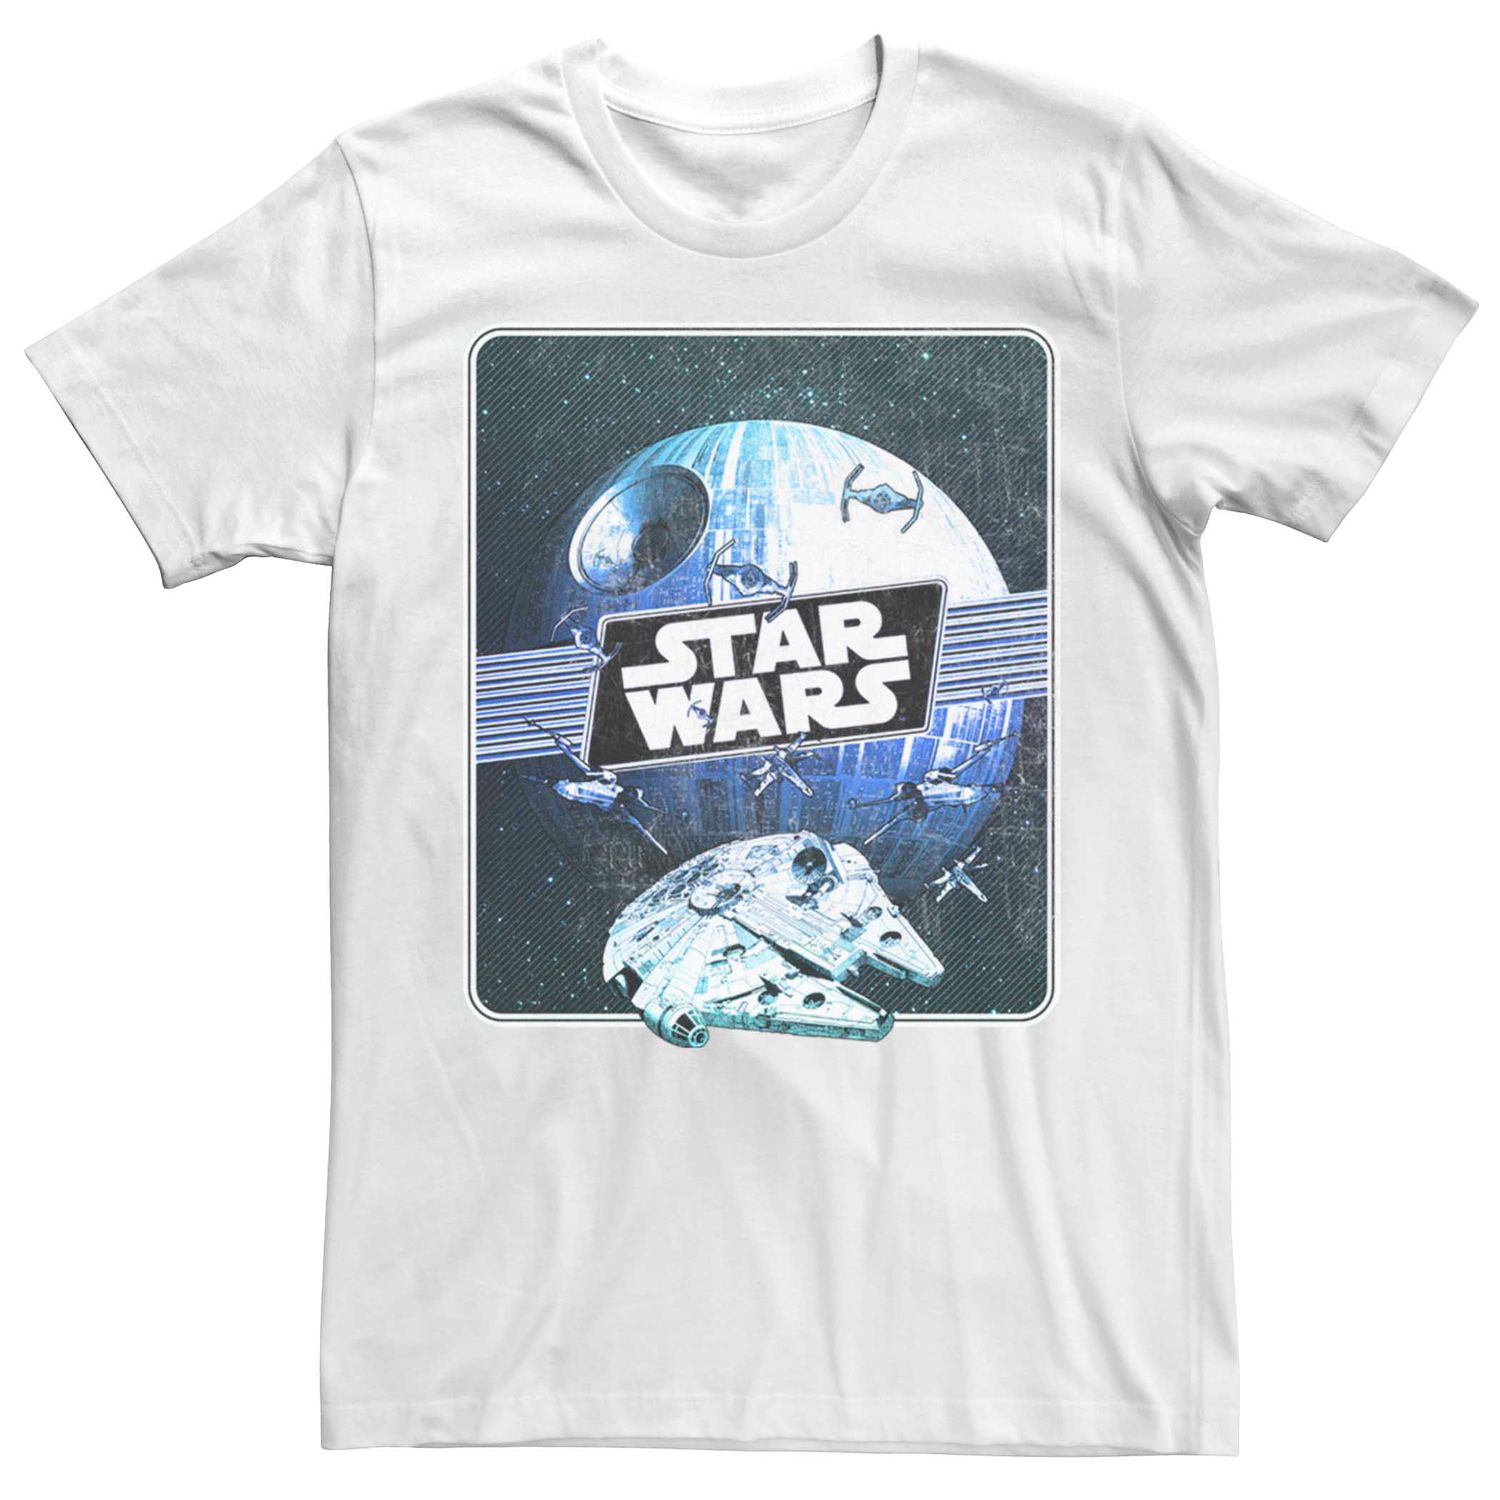 цена Мужская футболка с графическим плакатом и плакатом «Звездные войны» Licensed Character